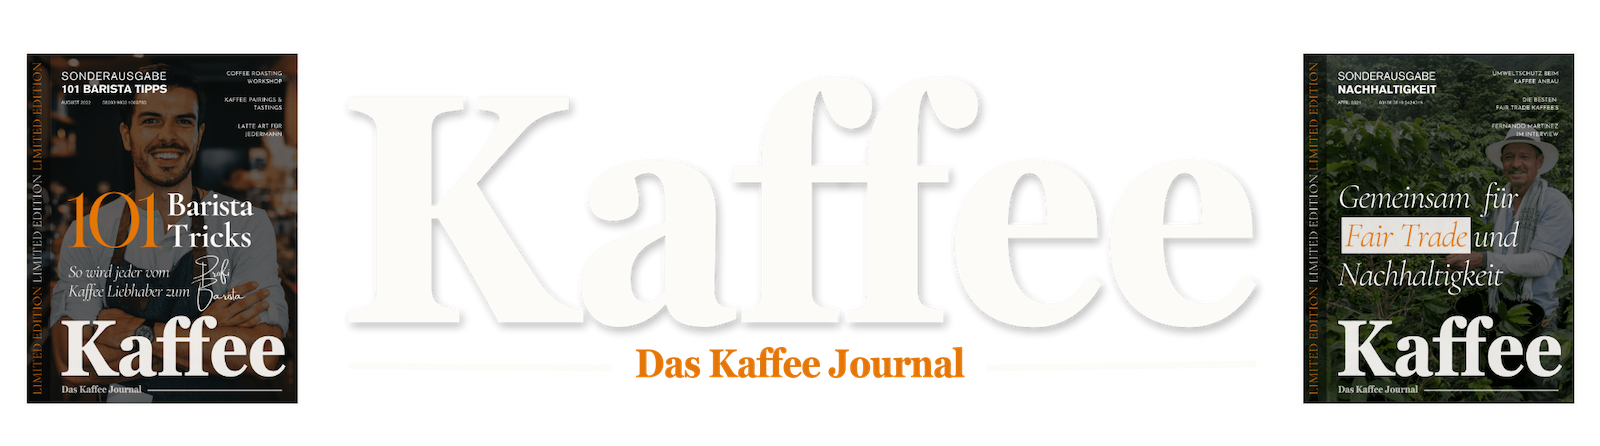 Das Kaffee Journal